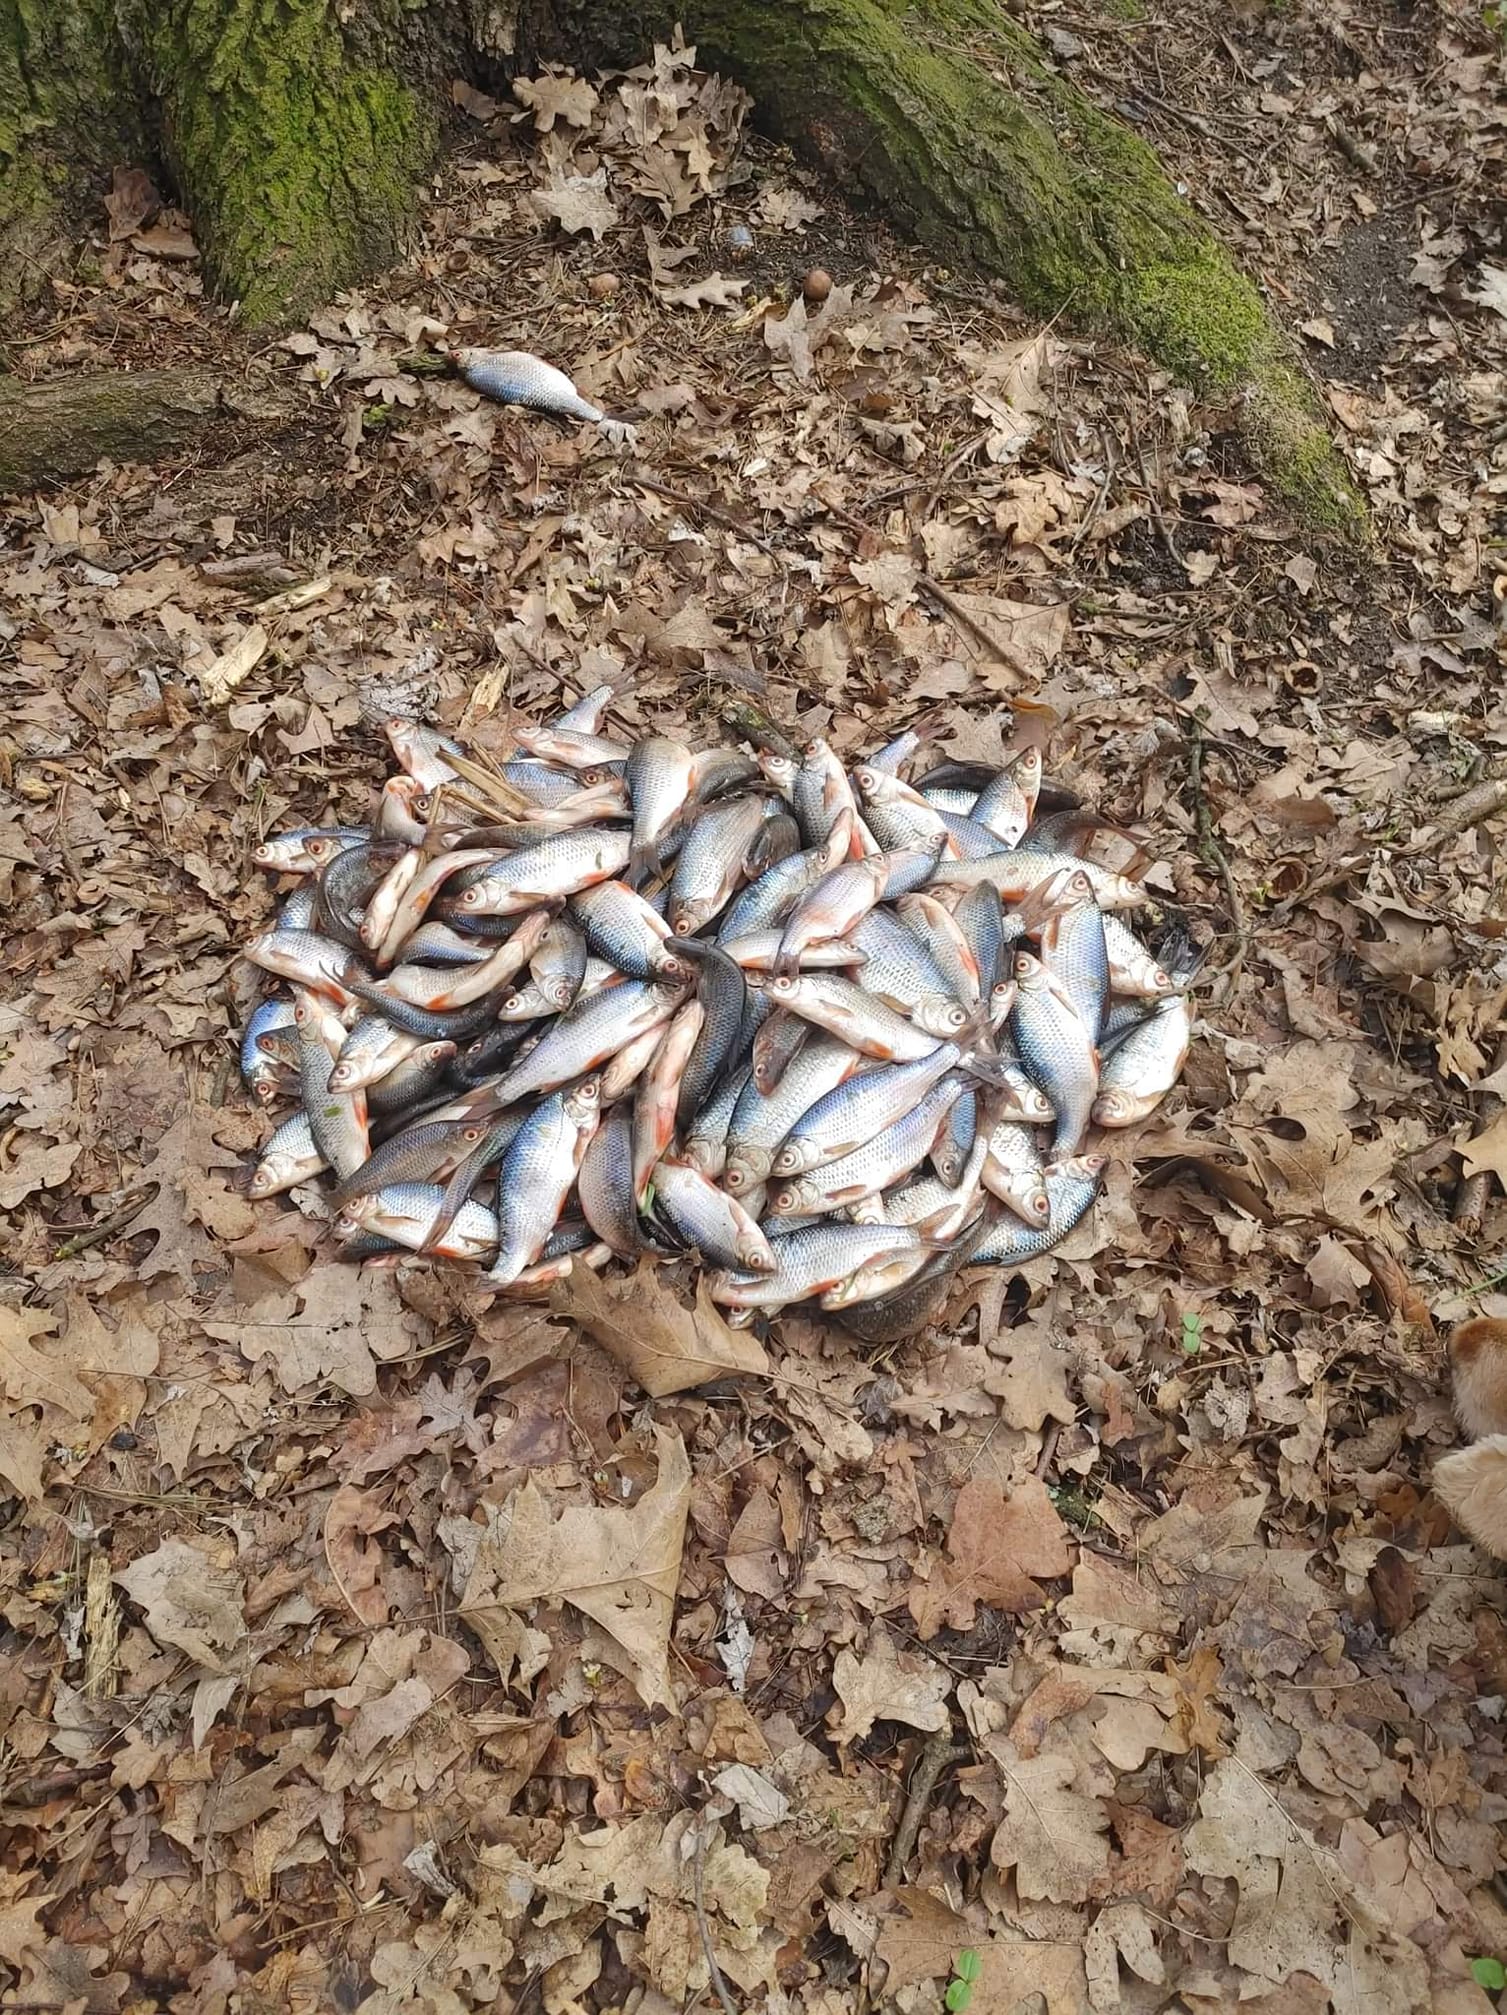 Ktoś podrzucił martwe ryby do leszczyńskiego parku